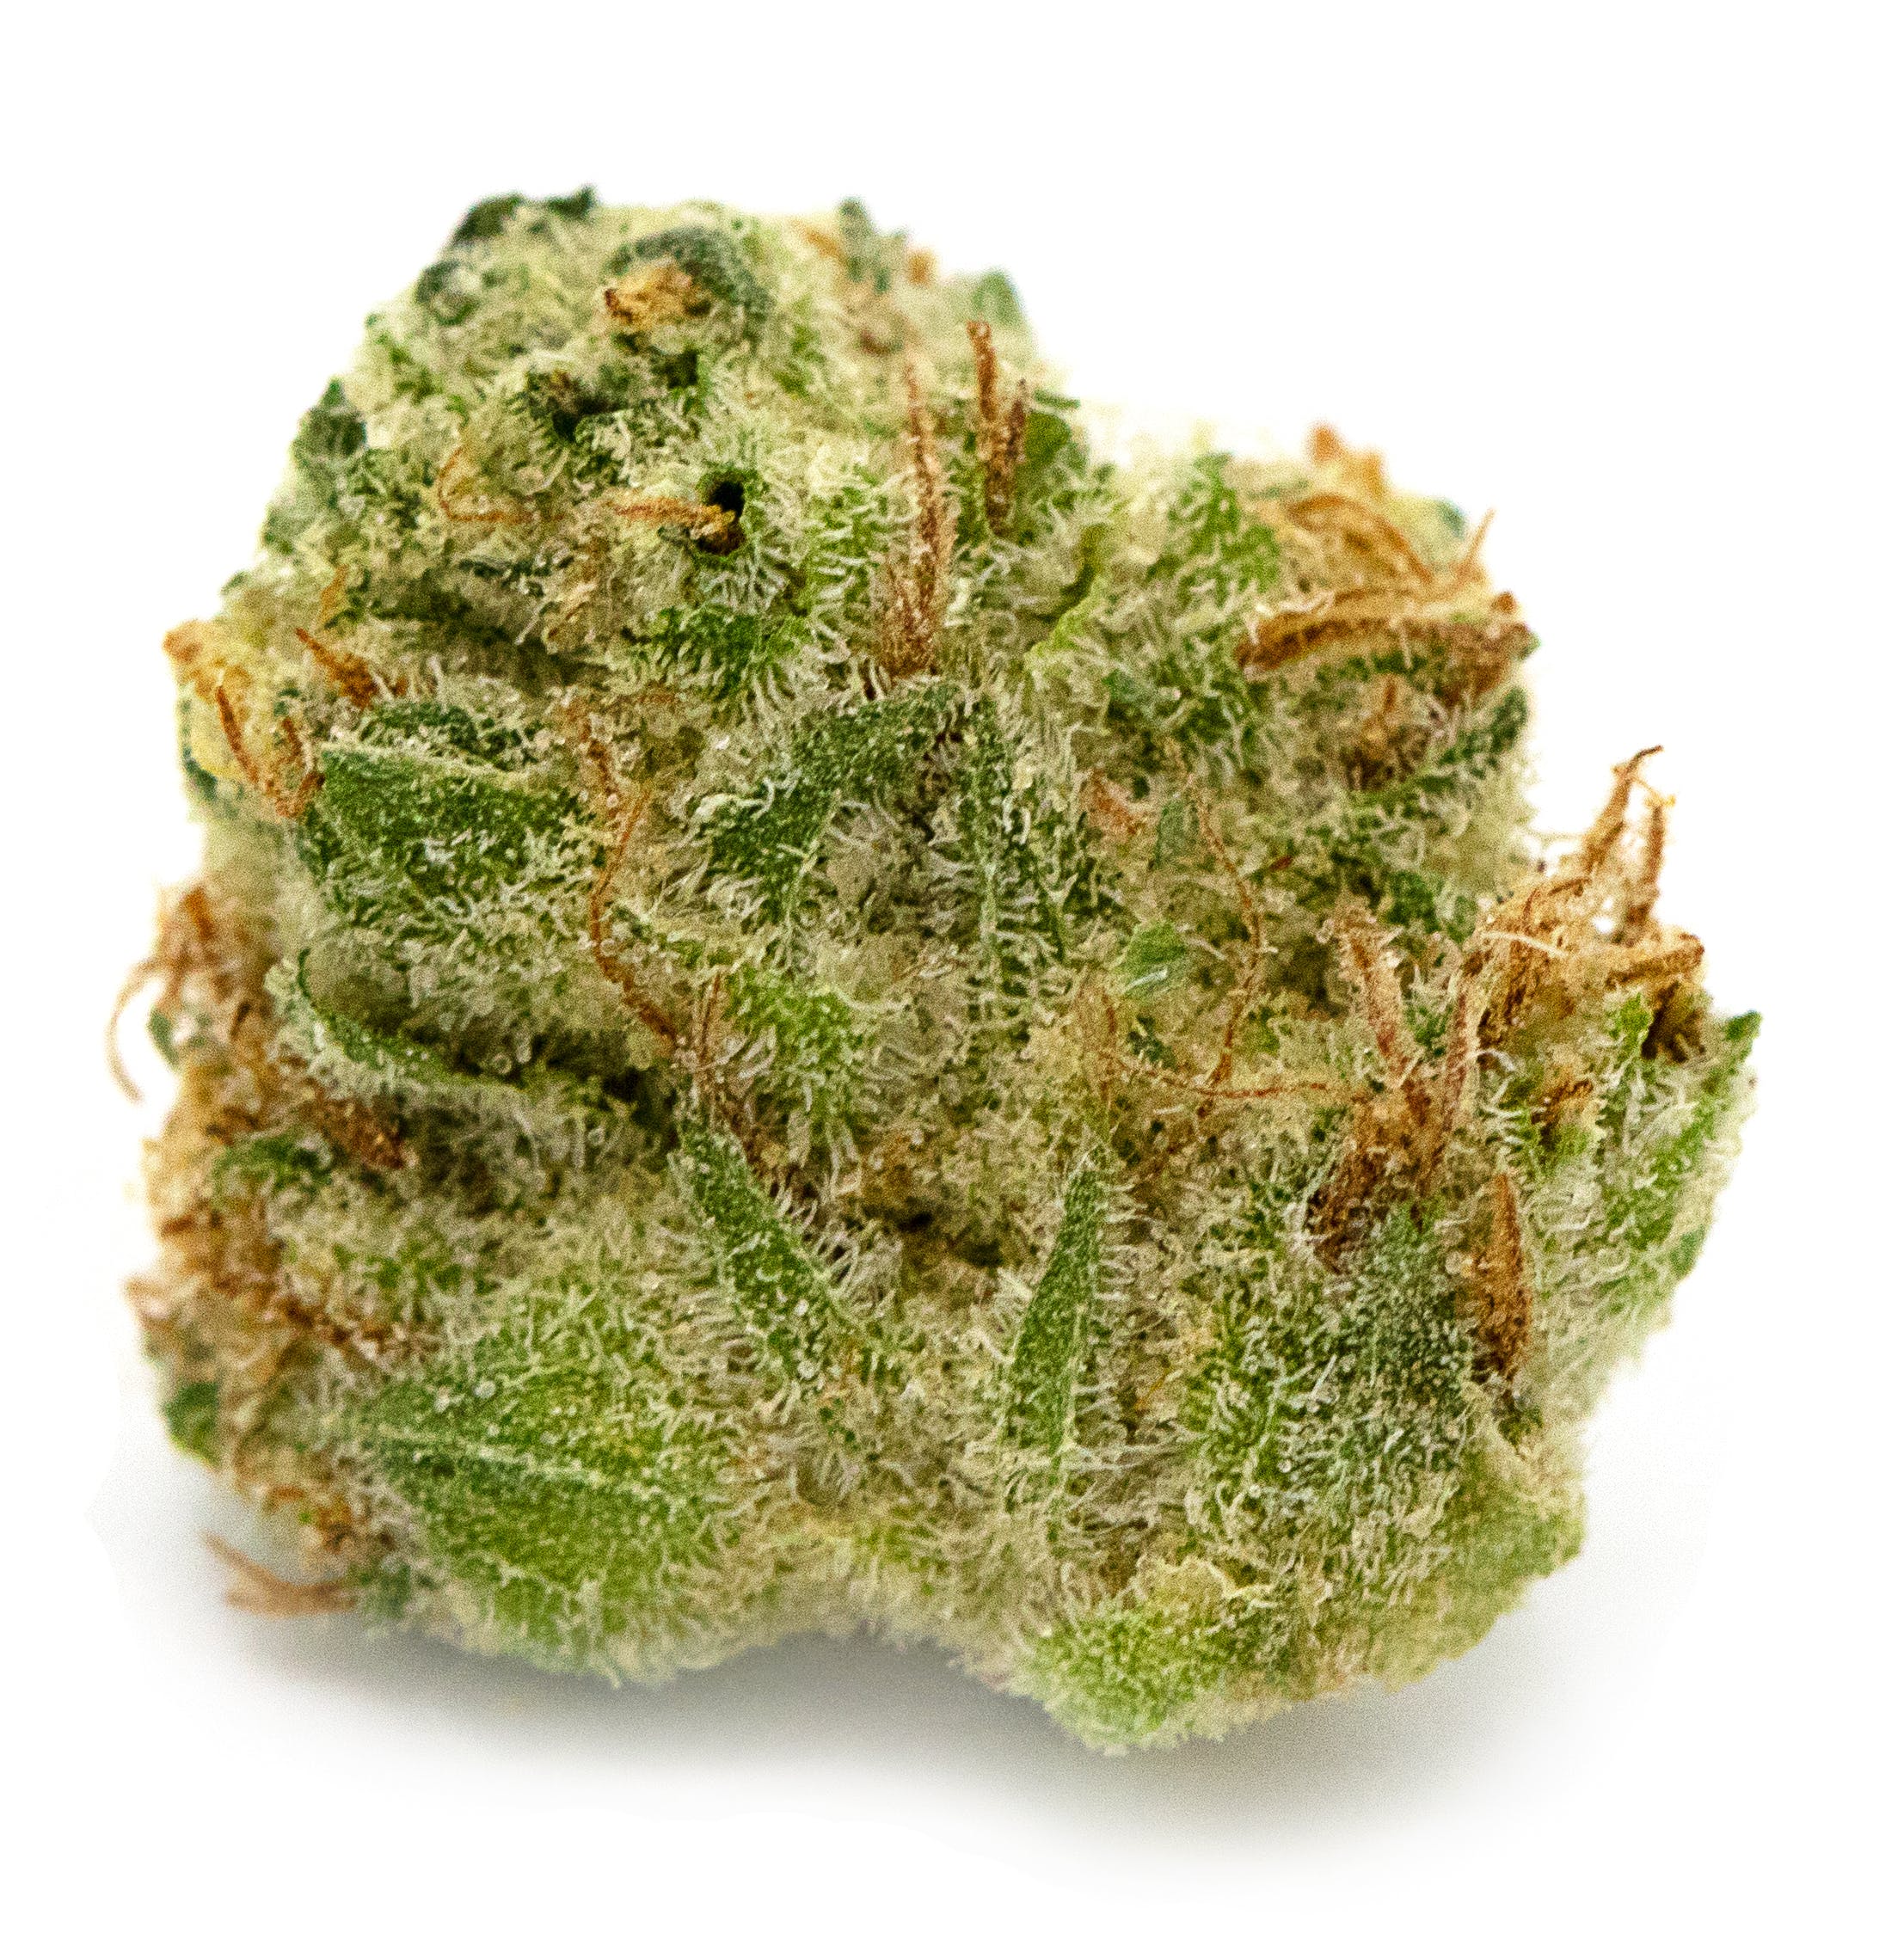 marijuana-dispensaries-medmen-abbot-kinney-in-venice-caliva-sour-lemon-d